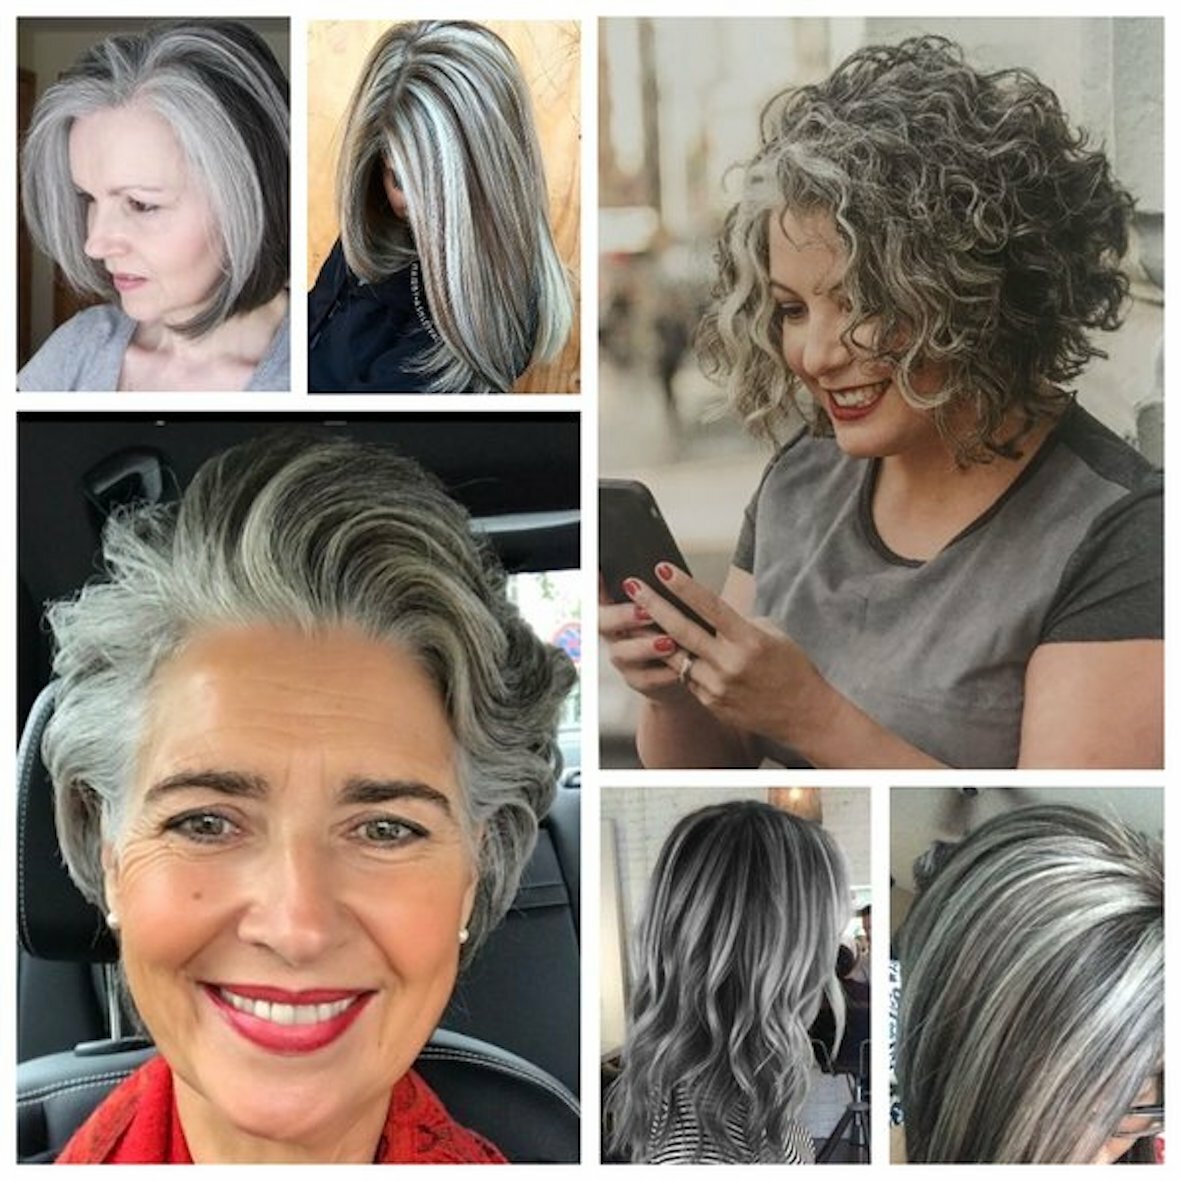 мелирование седых волос фото до и после